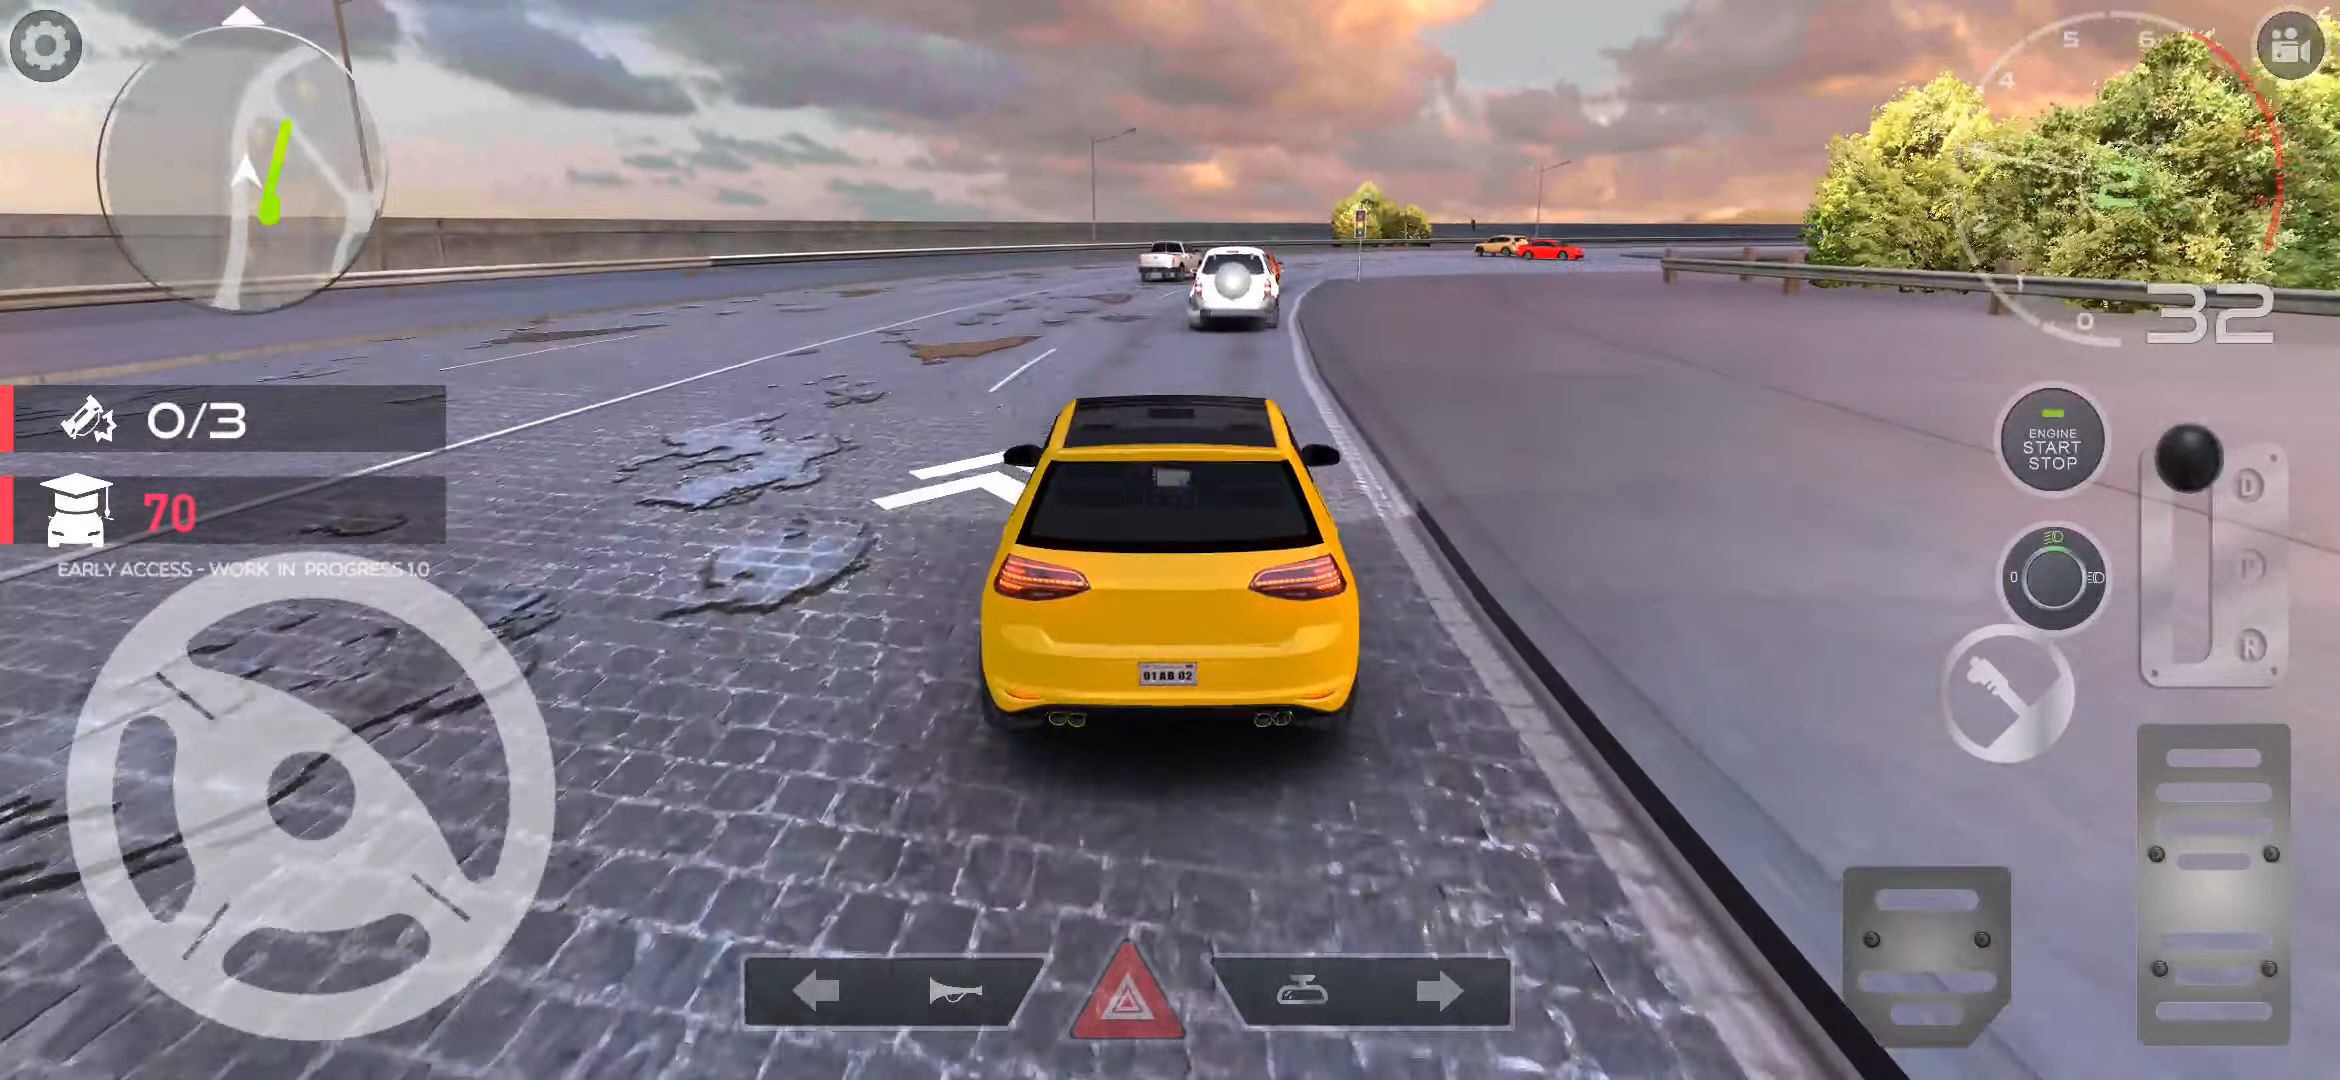 PetrolHead : Traffic Quests - Joyful City Driving capture d'écran 1